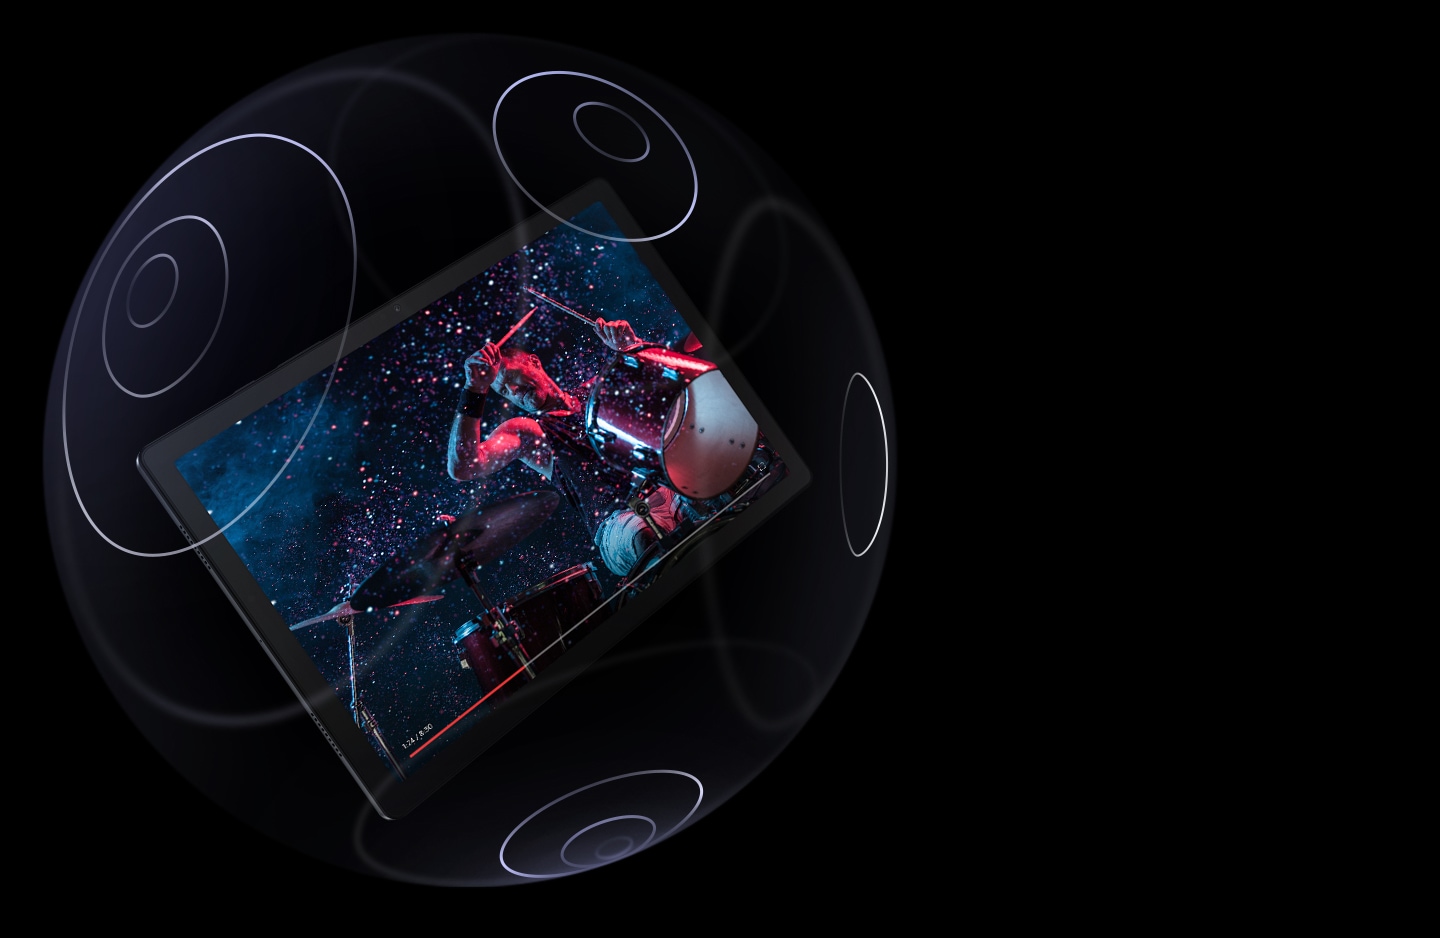 Das Galaxy Tab A8 schwebt in einer transparenten Kugel, auf deren Oberfläche konzentrische Kreise eingezeichnet sind. Der Bildschirm zeigt einen Mann, der Schlagzeug spielt, mit einem Fortschrittsbalken am unteren Rand. 